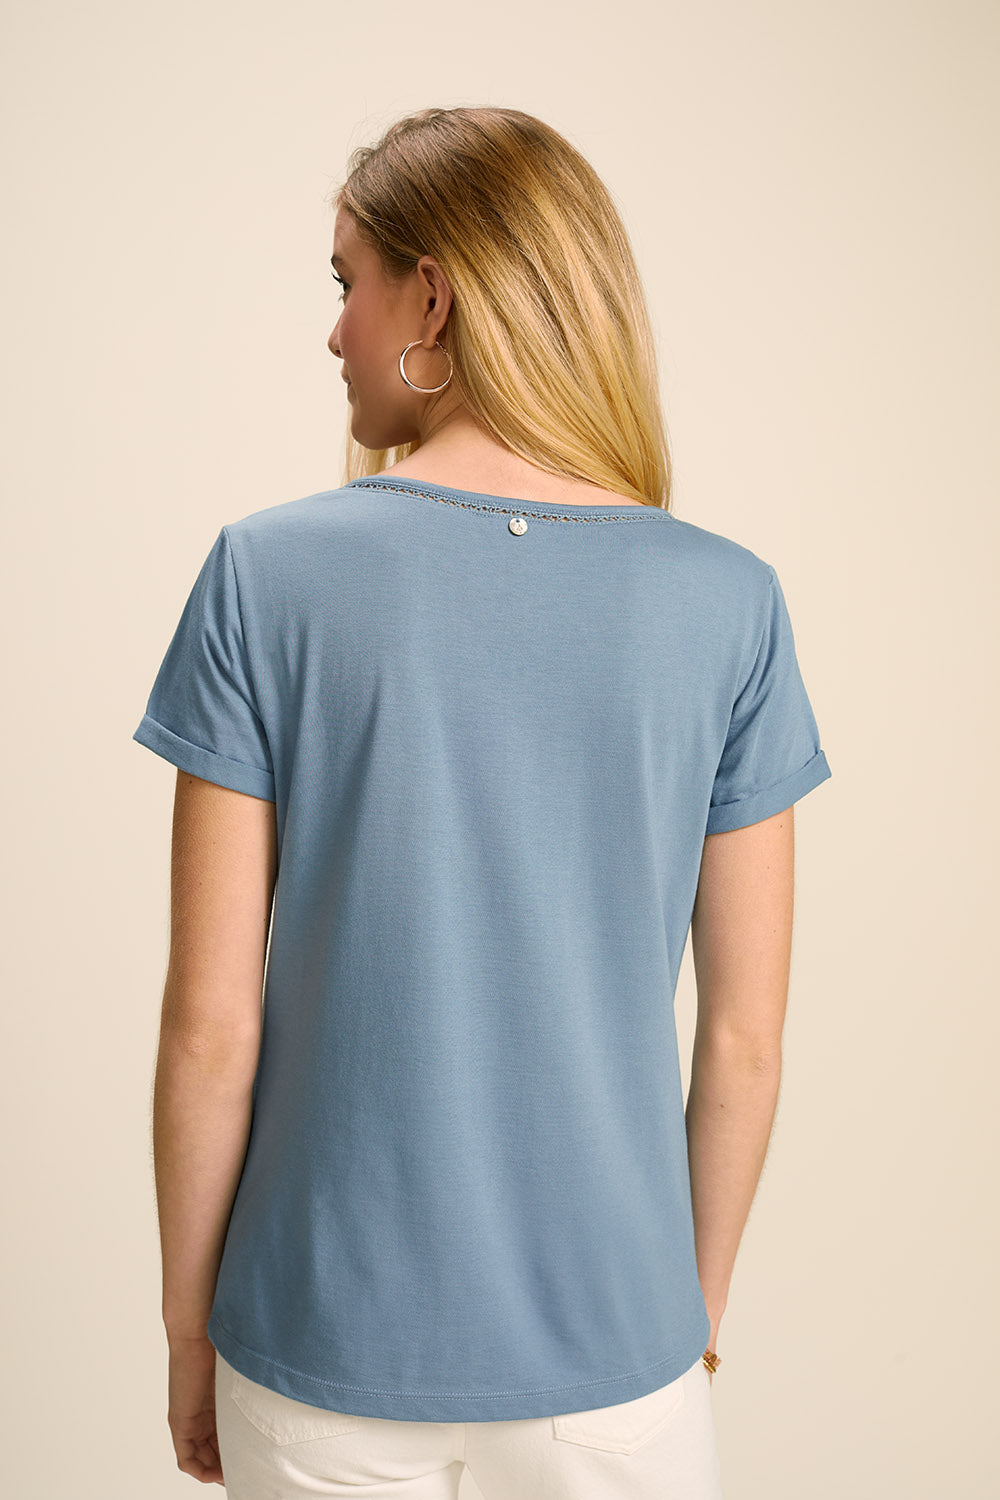 MYSTY - T-shirt bleu chambray coton bio avec galon broderie